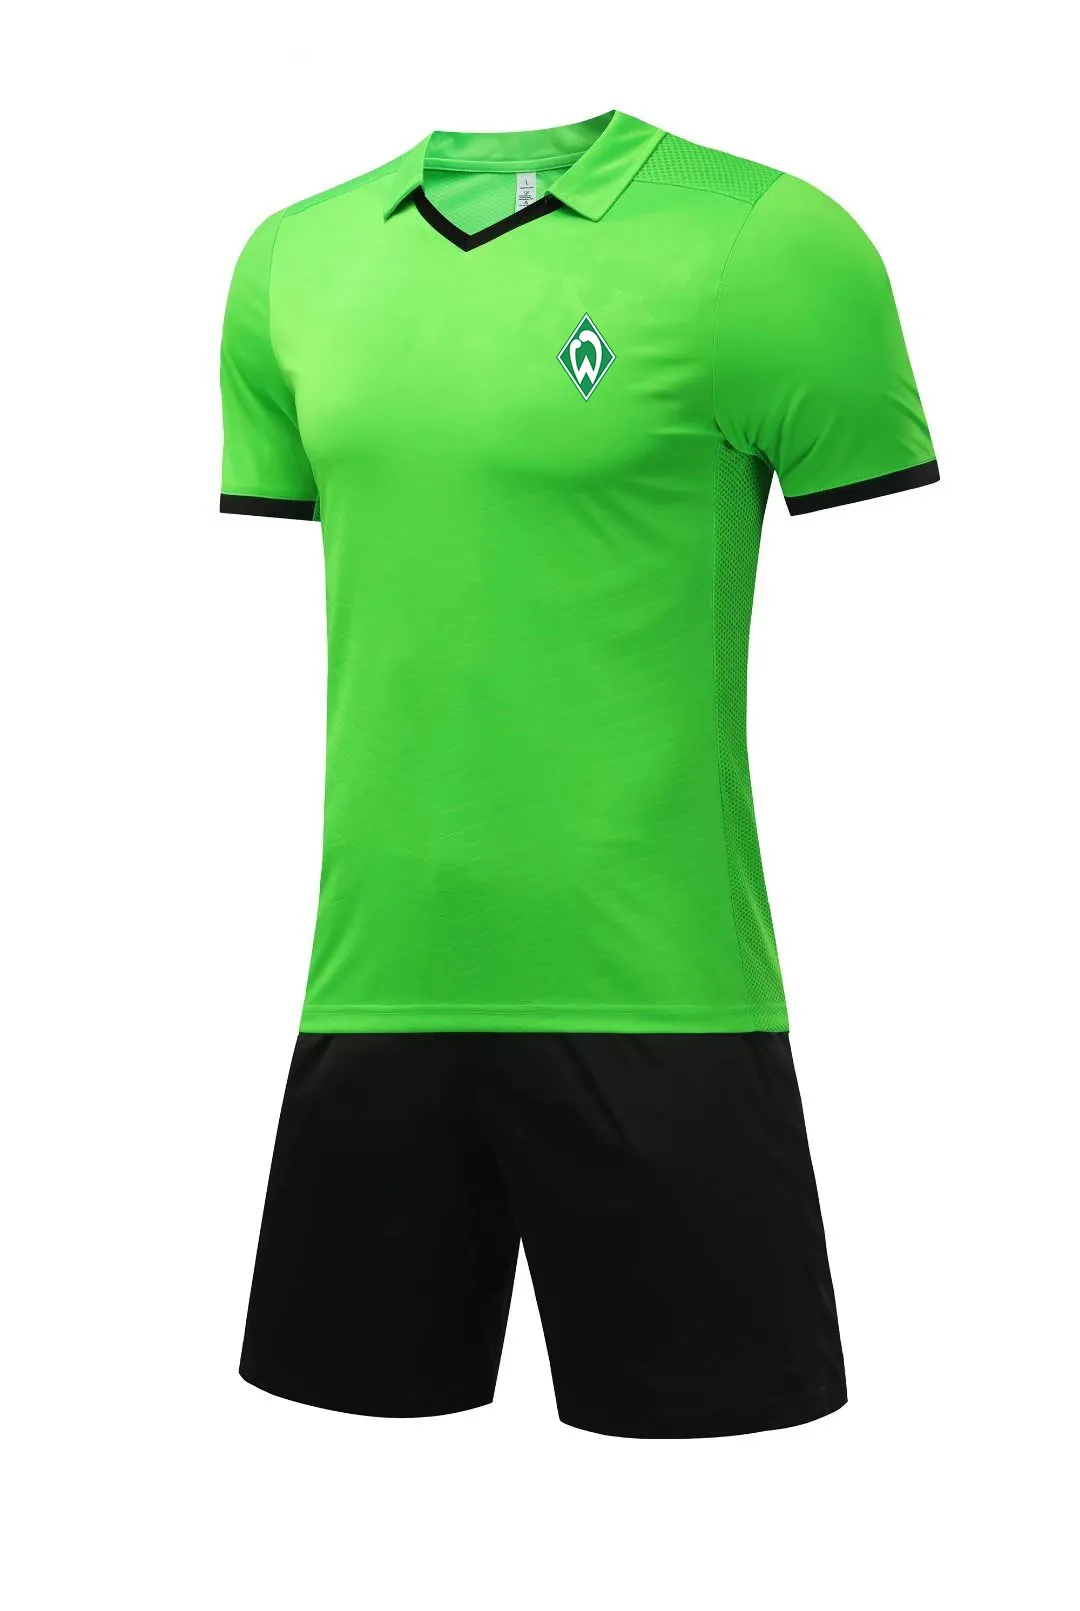 Sportverein Werder Bremen Fatos de treino masculino lapela terno esportivo de volta malha respirável exercício legal lazer ao ar livre esporte camisa de manga curta